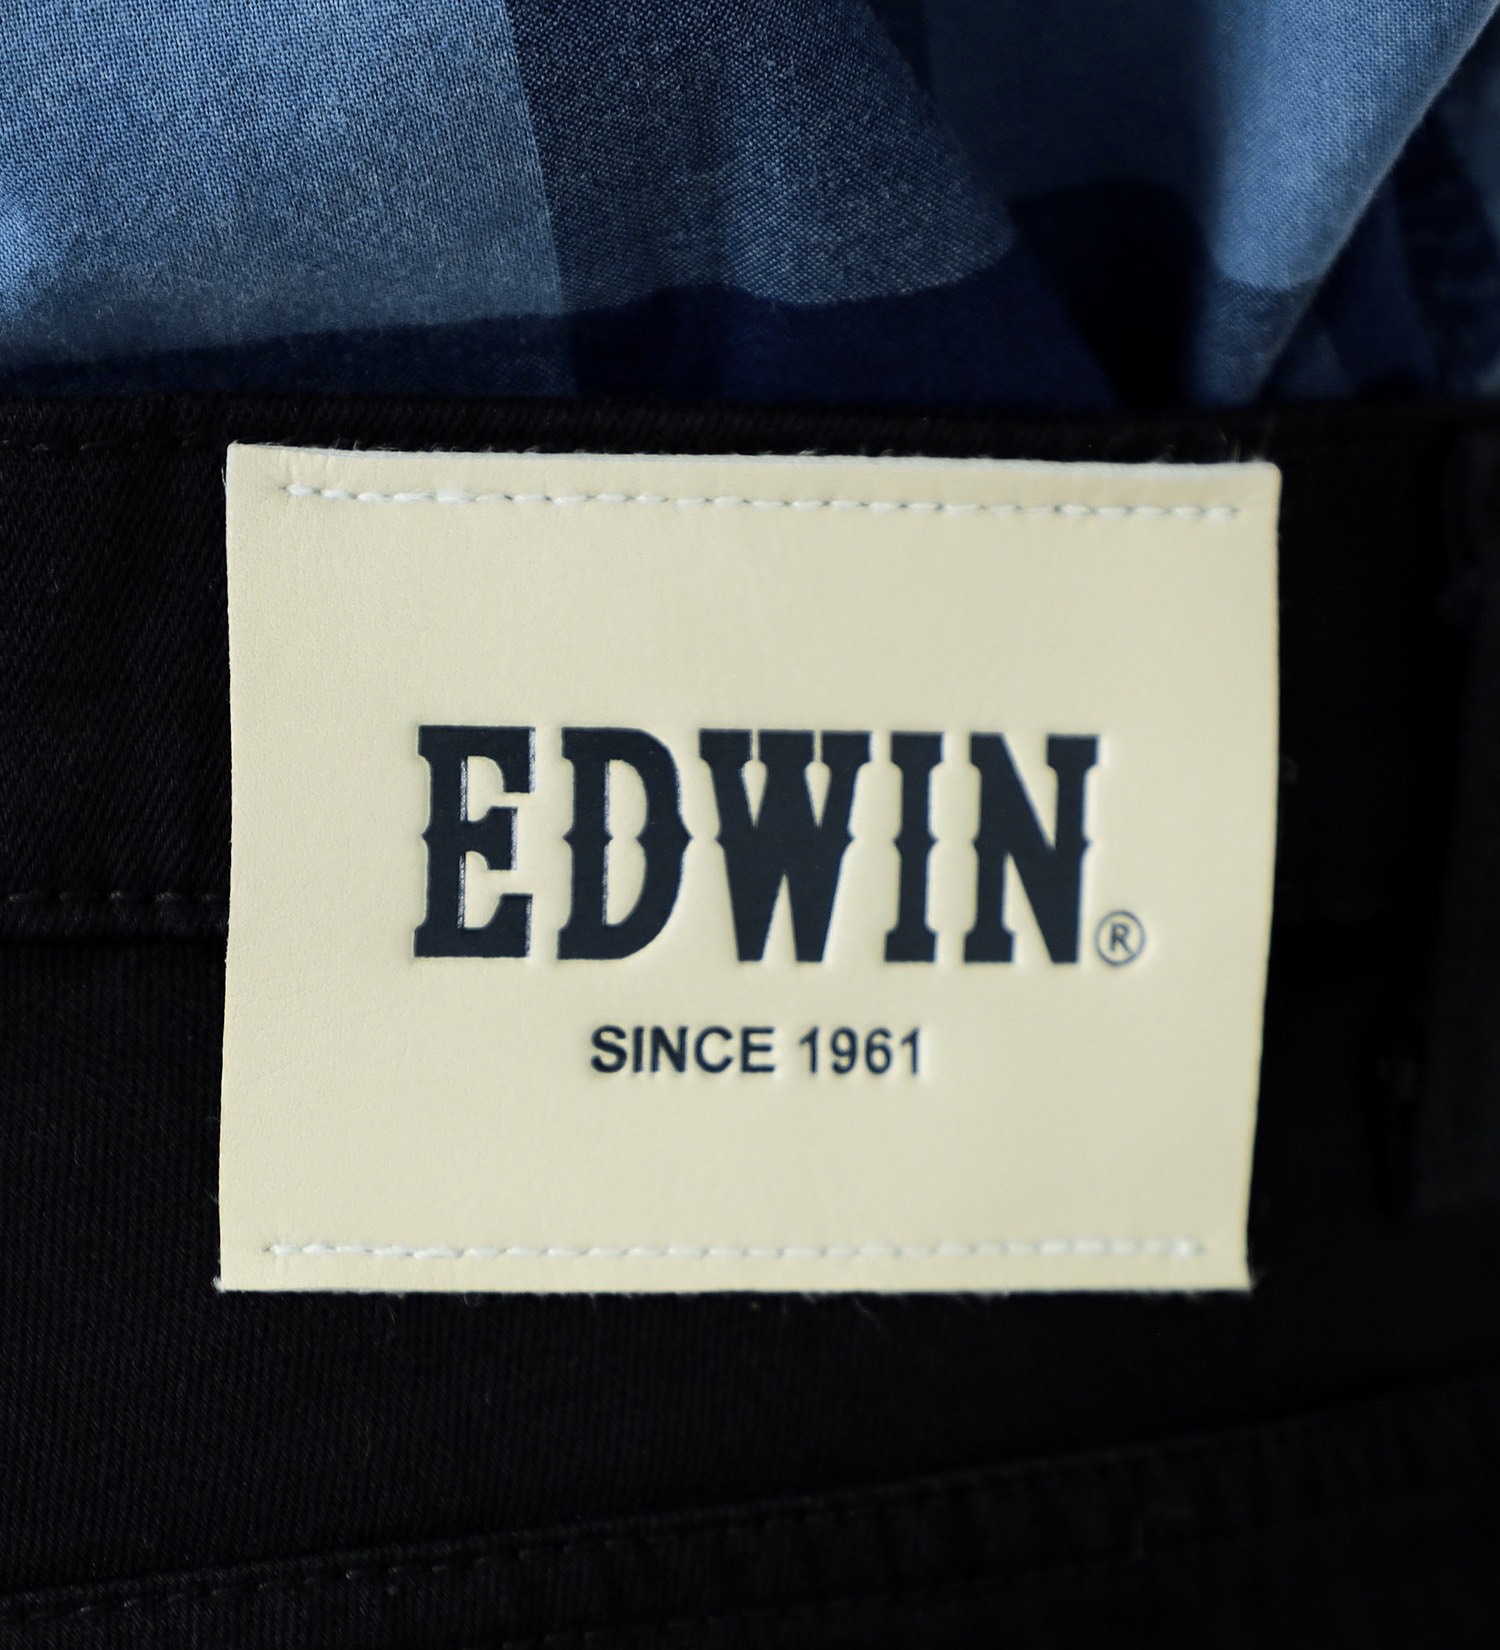 EDWIN(エドウイン)の【試着対象】COOL FLEX 吸汗速乾 レギュラーストレートパンツ 日本製 裏メッシュ|パンツ/パンツ/メンズ|ブラック